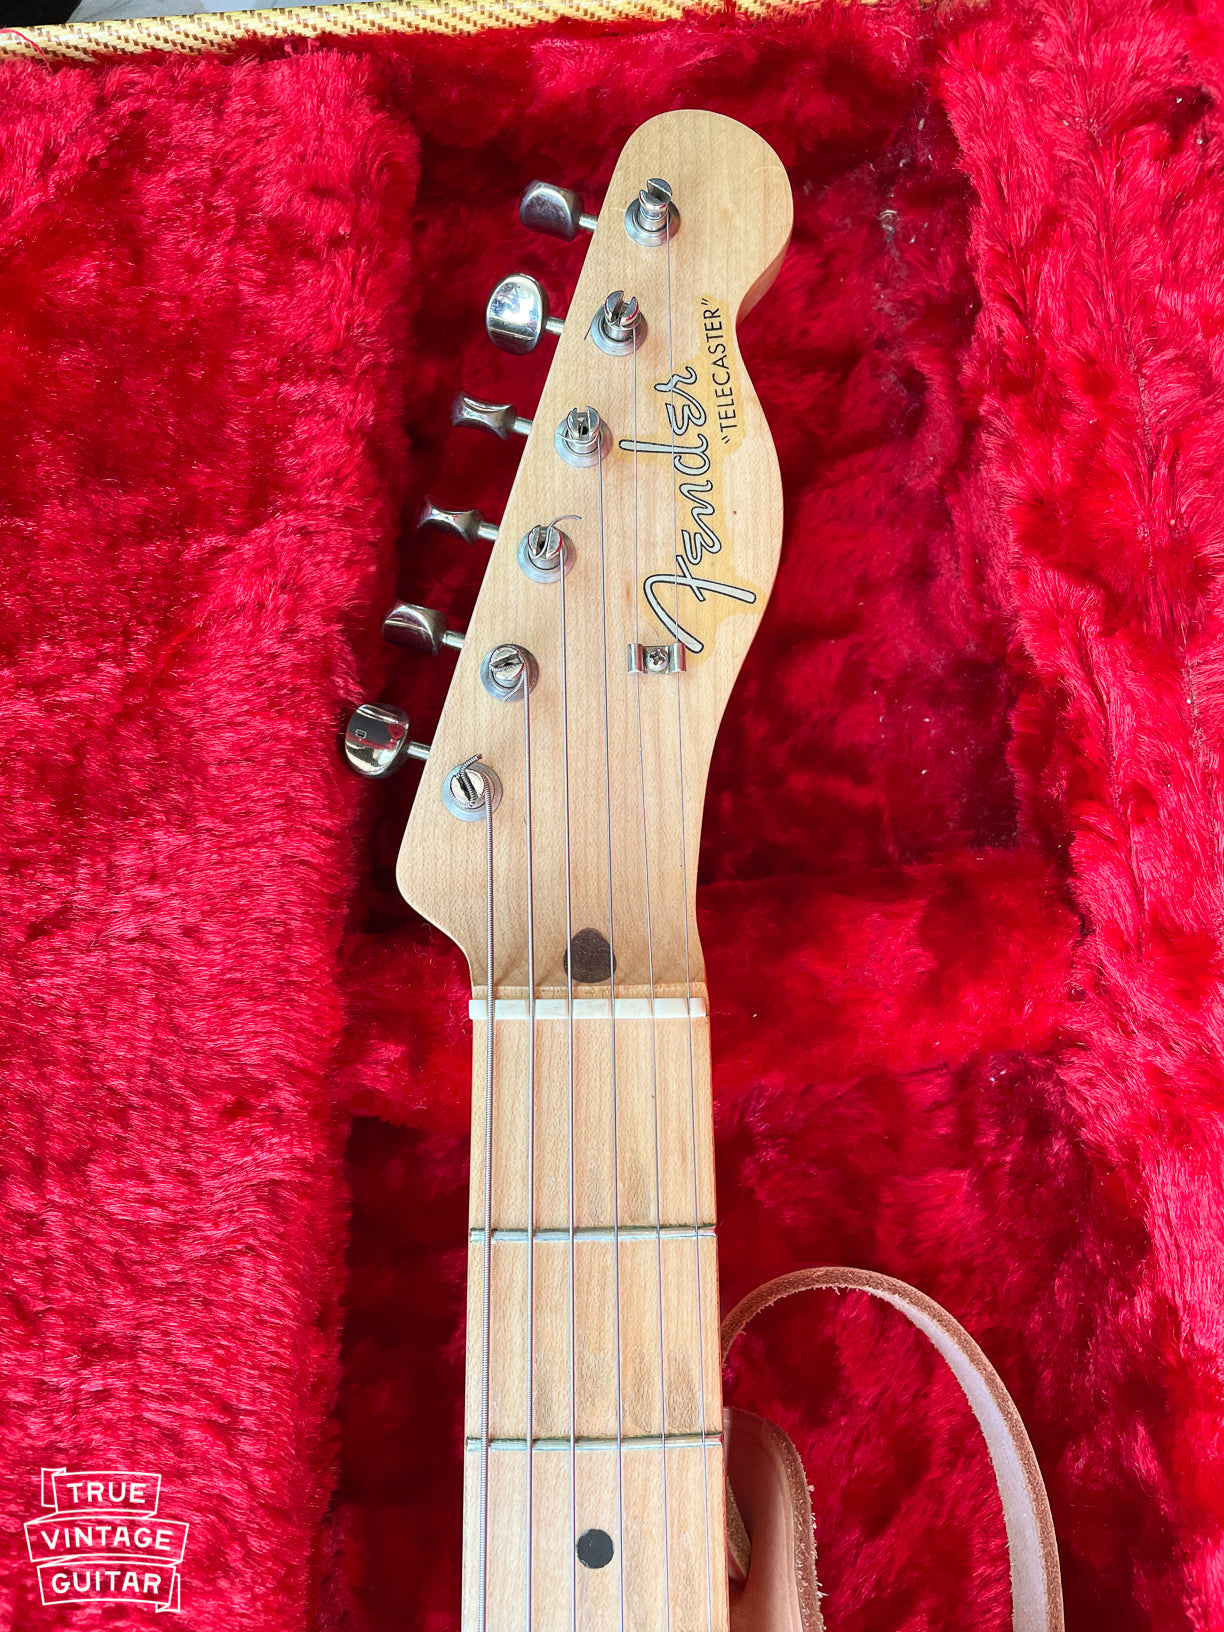 Sell Fender Telecaster guitars 1950s 1960s